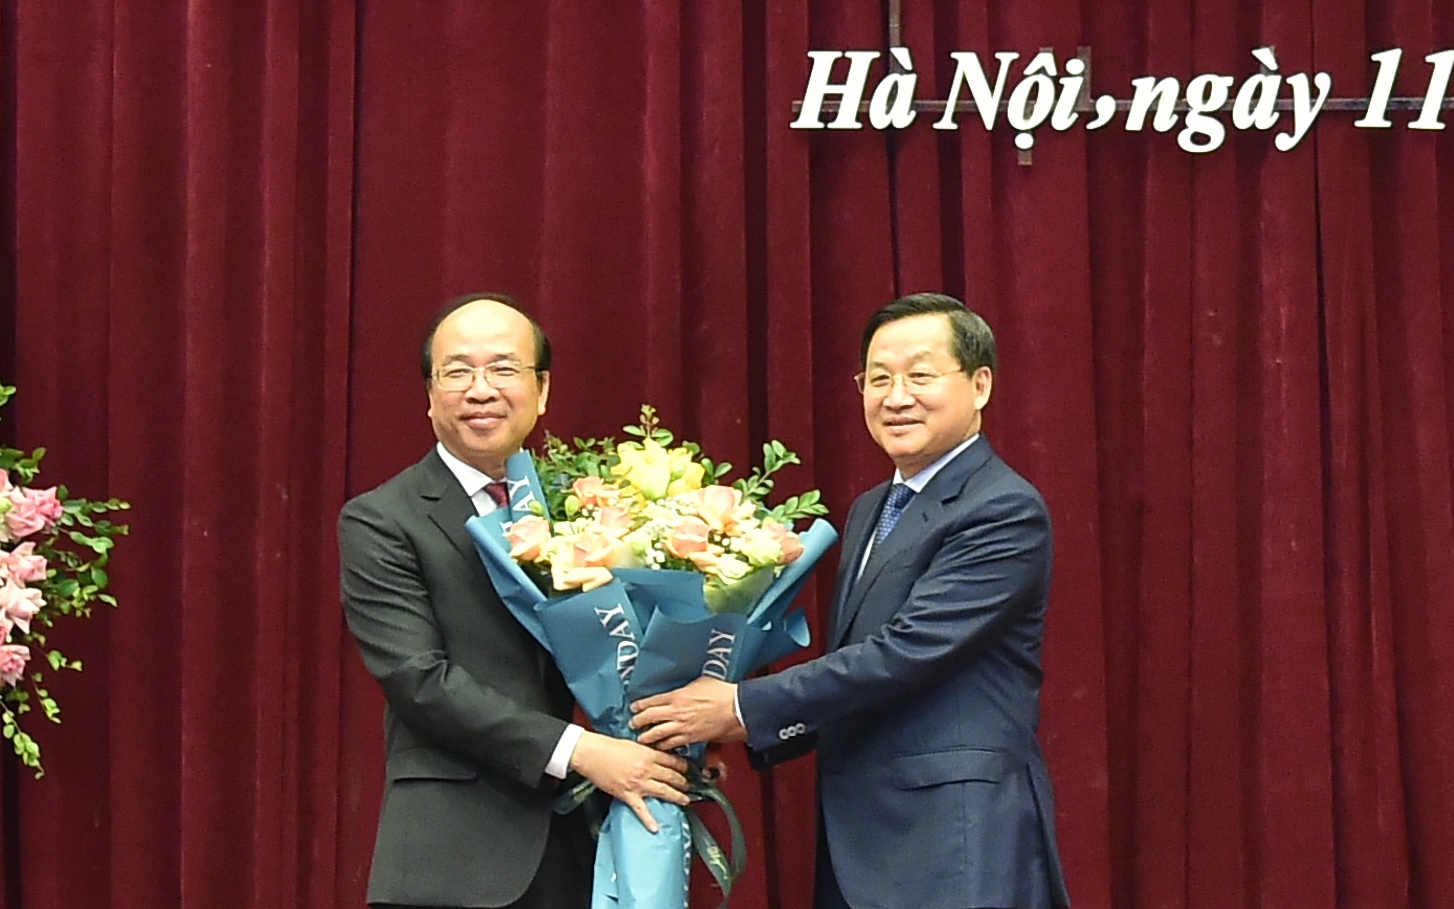 Công bố quyết định bổ nhiệm Chủ tịch Viện Hàn lâm Khoa học xã hội Việt Nam